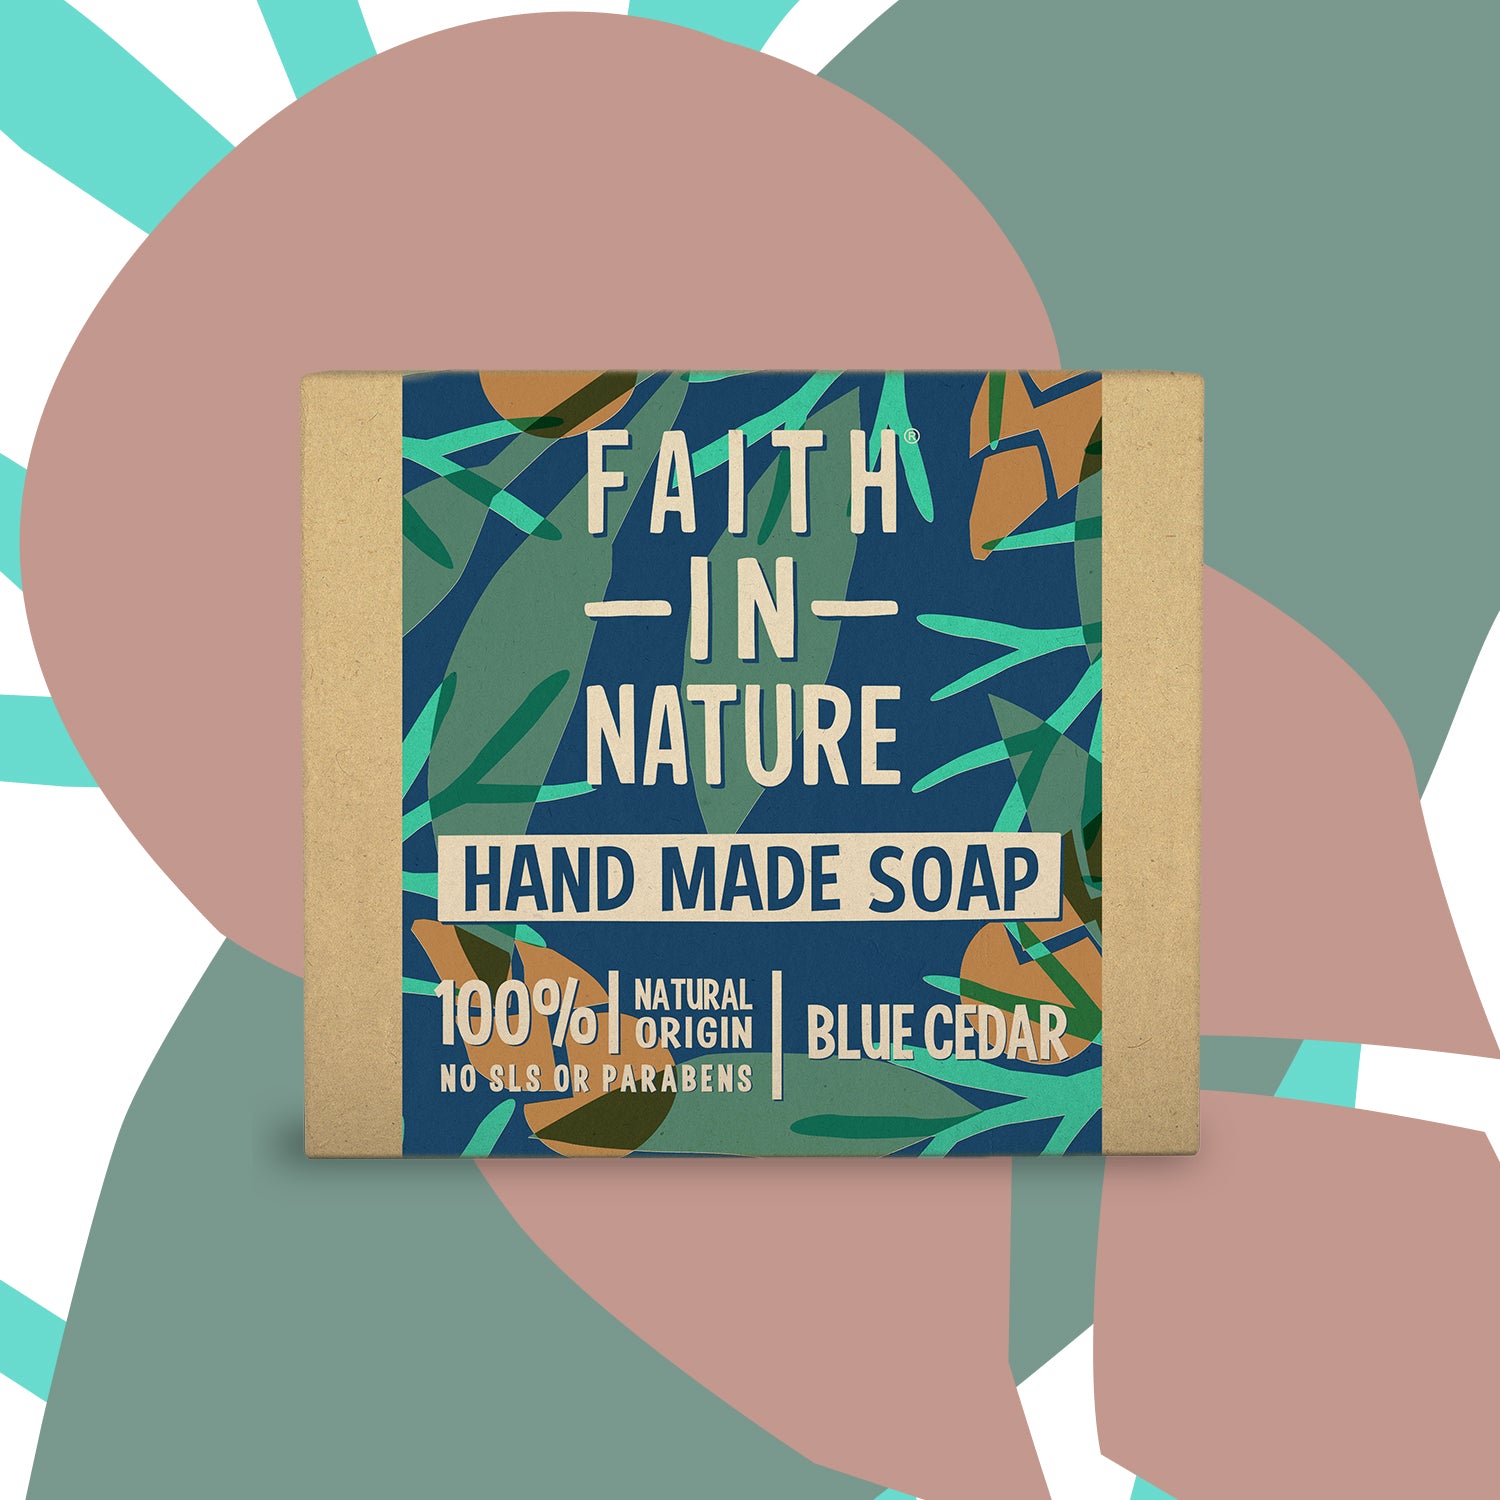 Faith in Nature Boxed Soap 100g - Blue Cedar